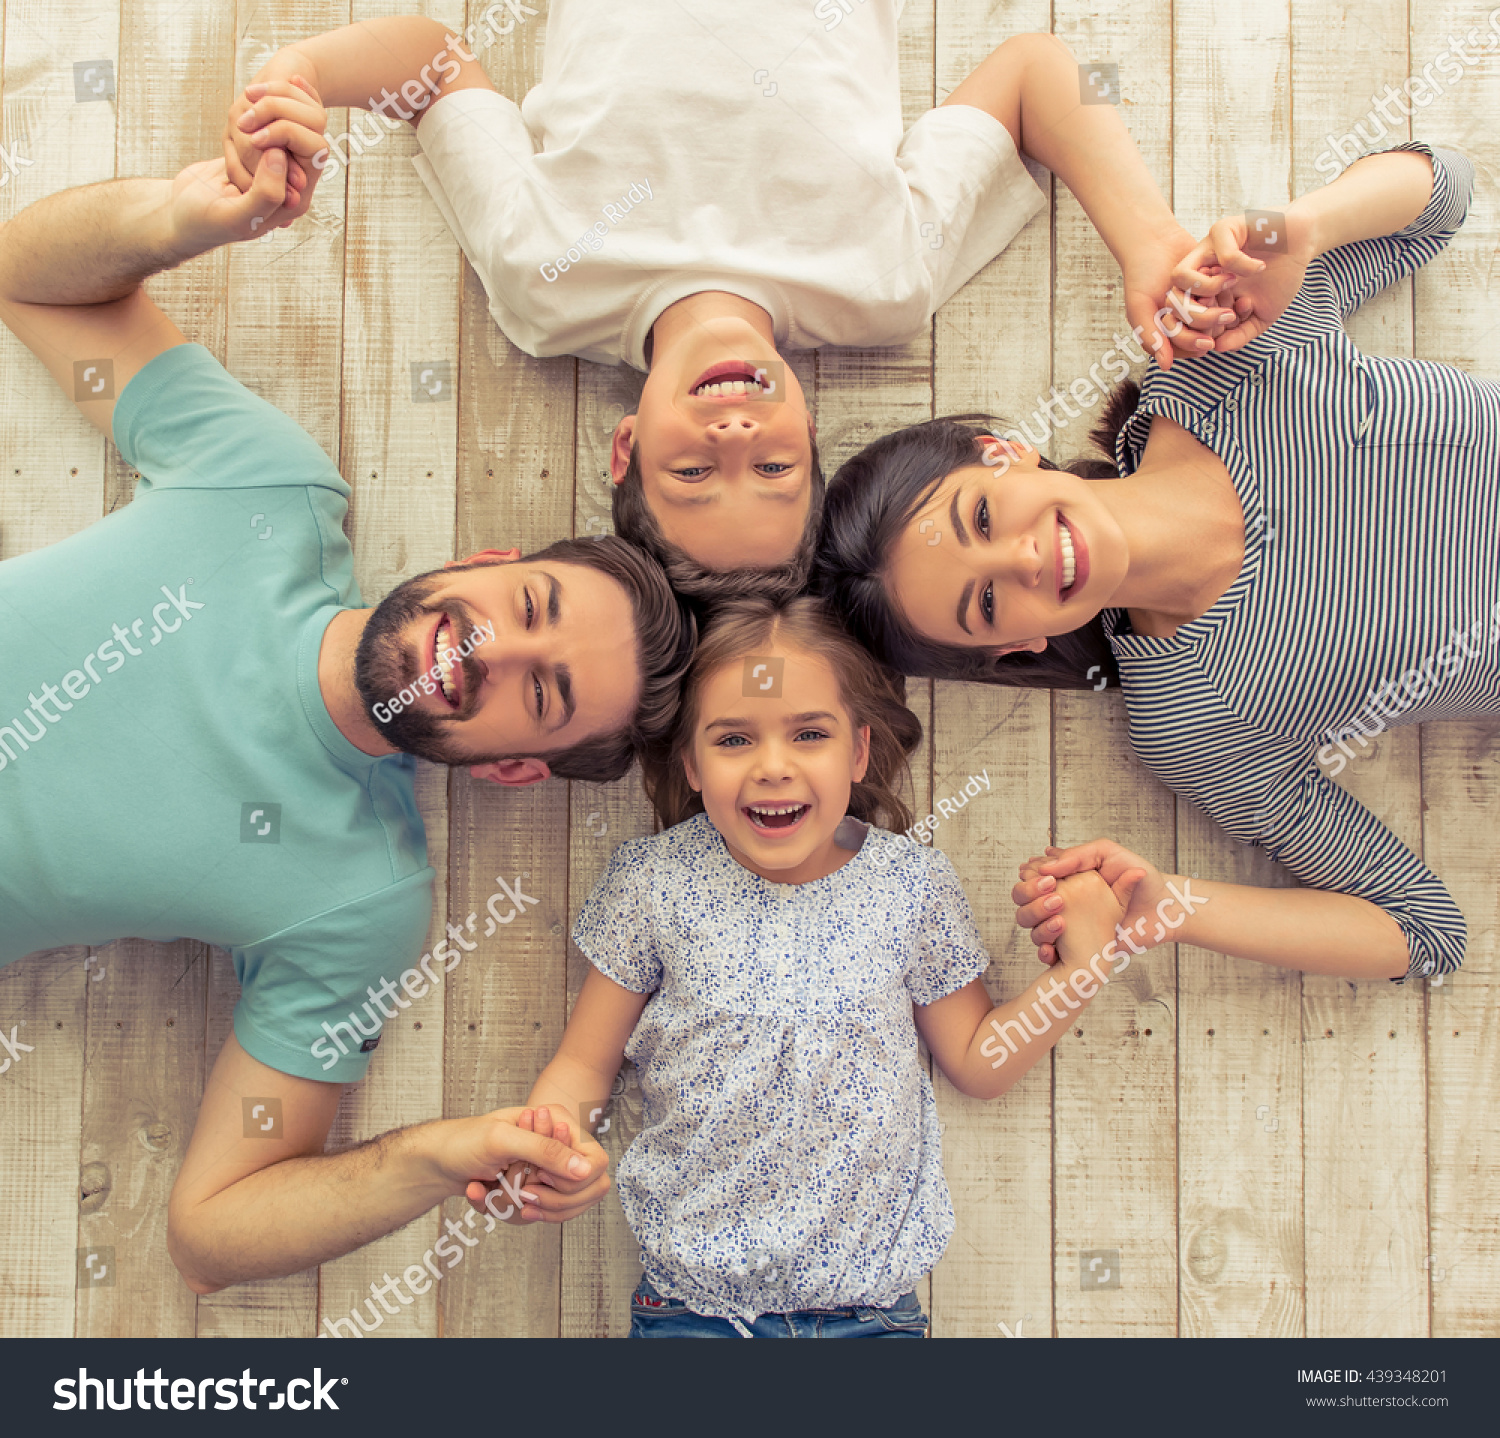 Включи сыновья и дочки. Семья со счастливым ребёнком. Семейная фотосессия. Счастливые дети и родители. Гармоничная семья.